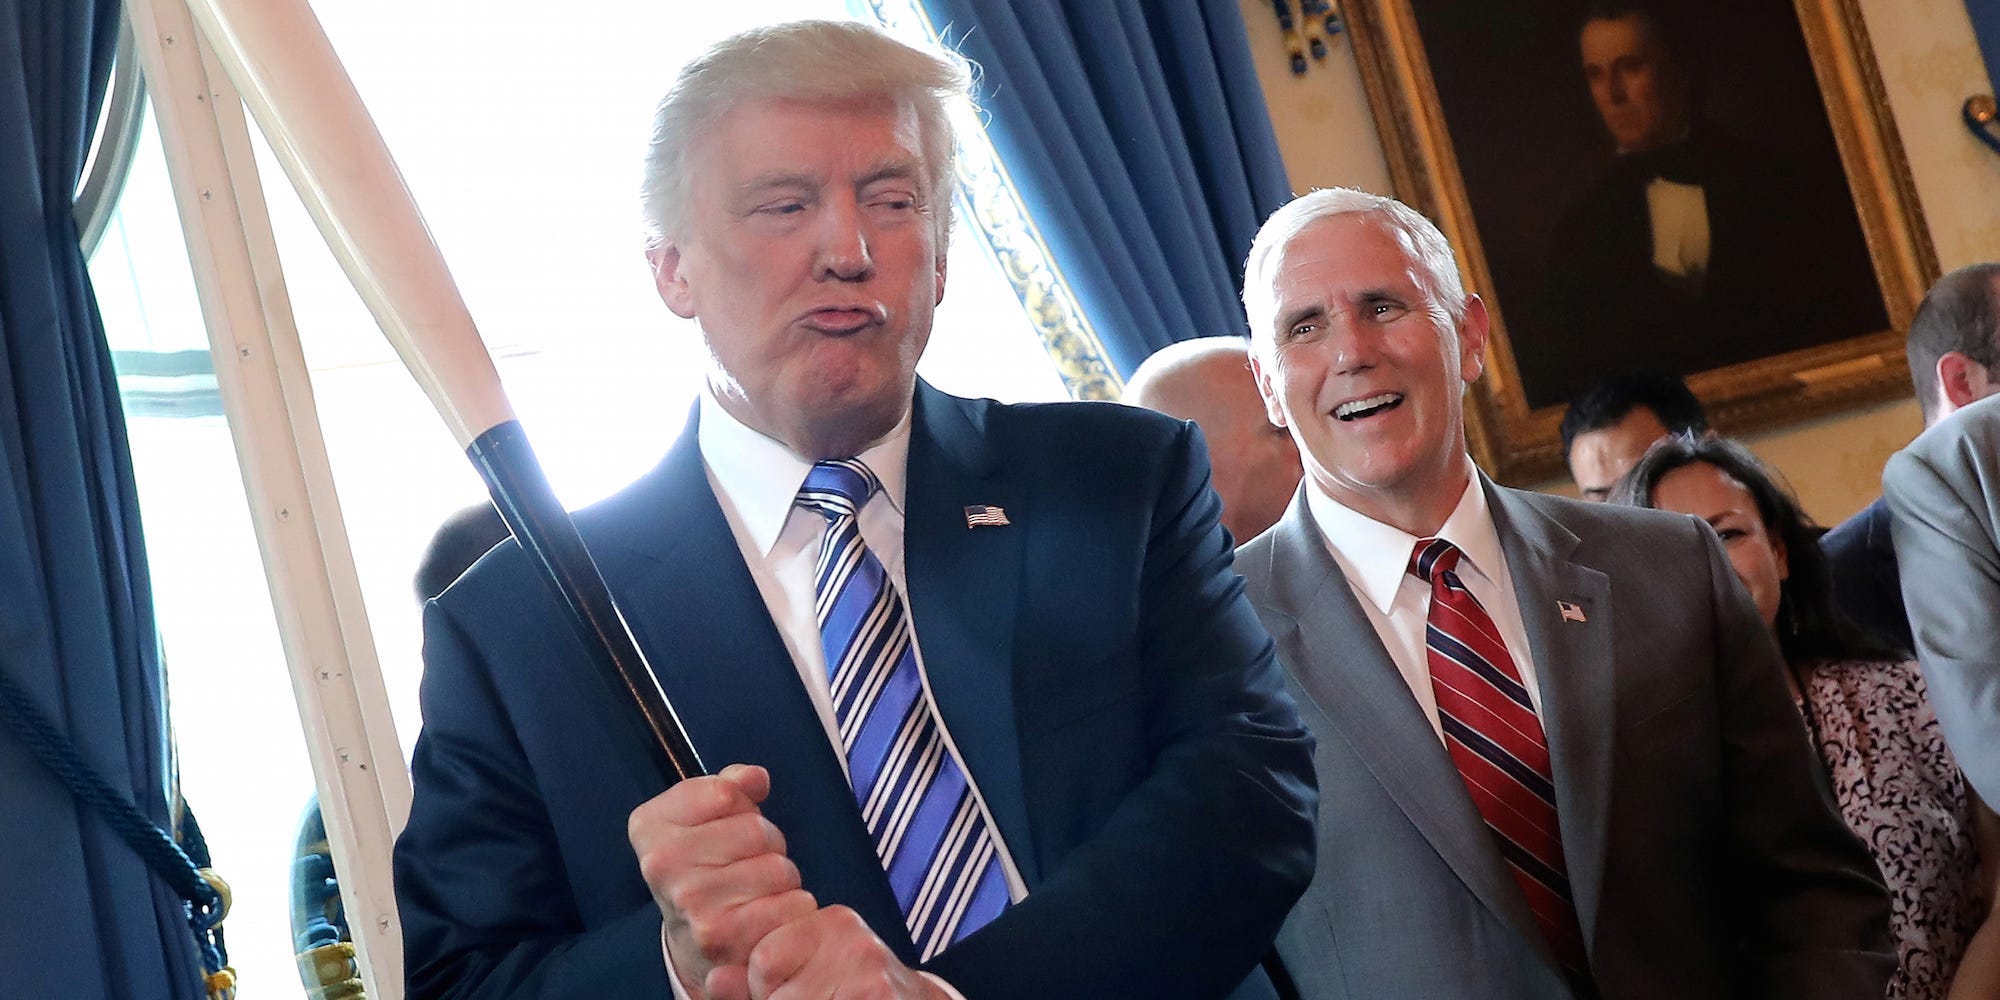 President Donald Trump houdt een honkbalknuppel vast tijdens de 'Made in America'-productpresentatie in het Witte Huis. 17 juli 2017. Foto: Reuters/Carlos Barria 